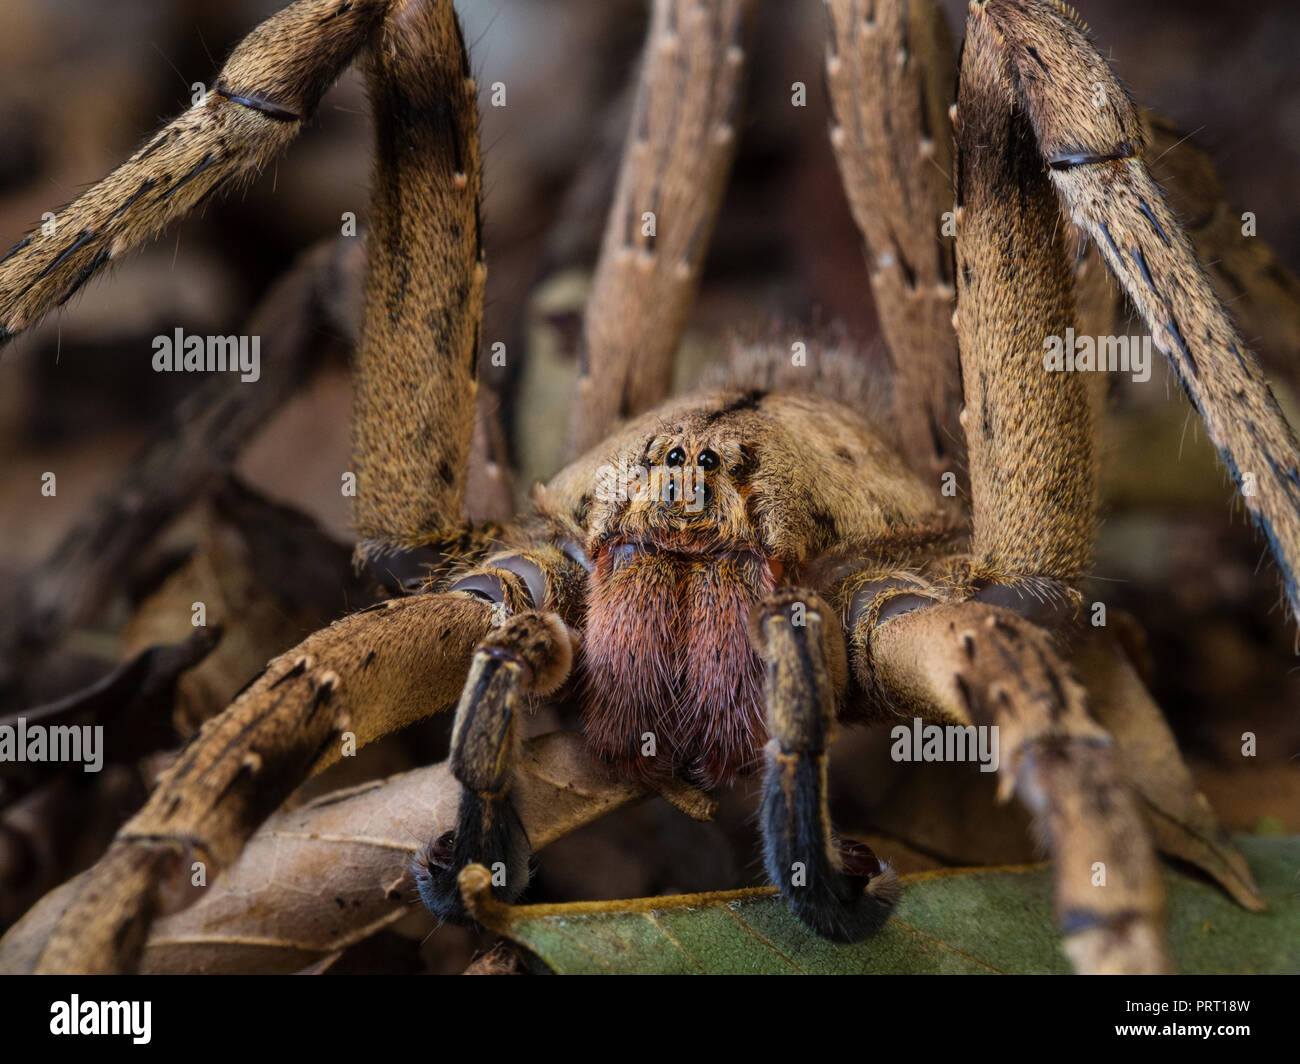 Phoneutria maschio (brasiliano ragno errante / armadeira), ragno velenoso sul suolo della foresta che mostra la faccia di ragno, dal sud-est del Brasile. Foto Stock